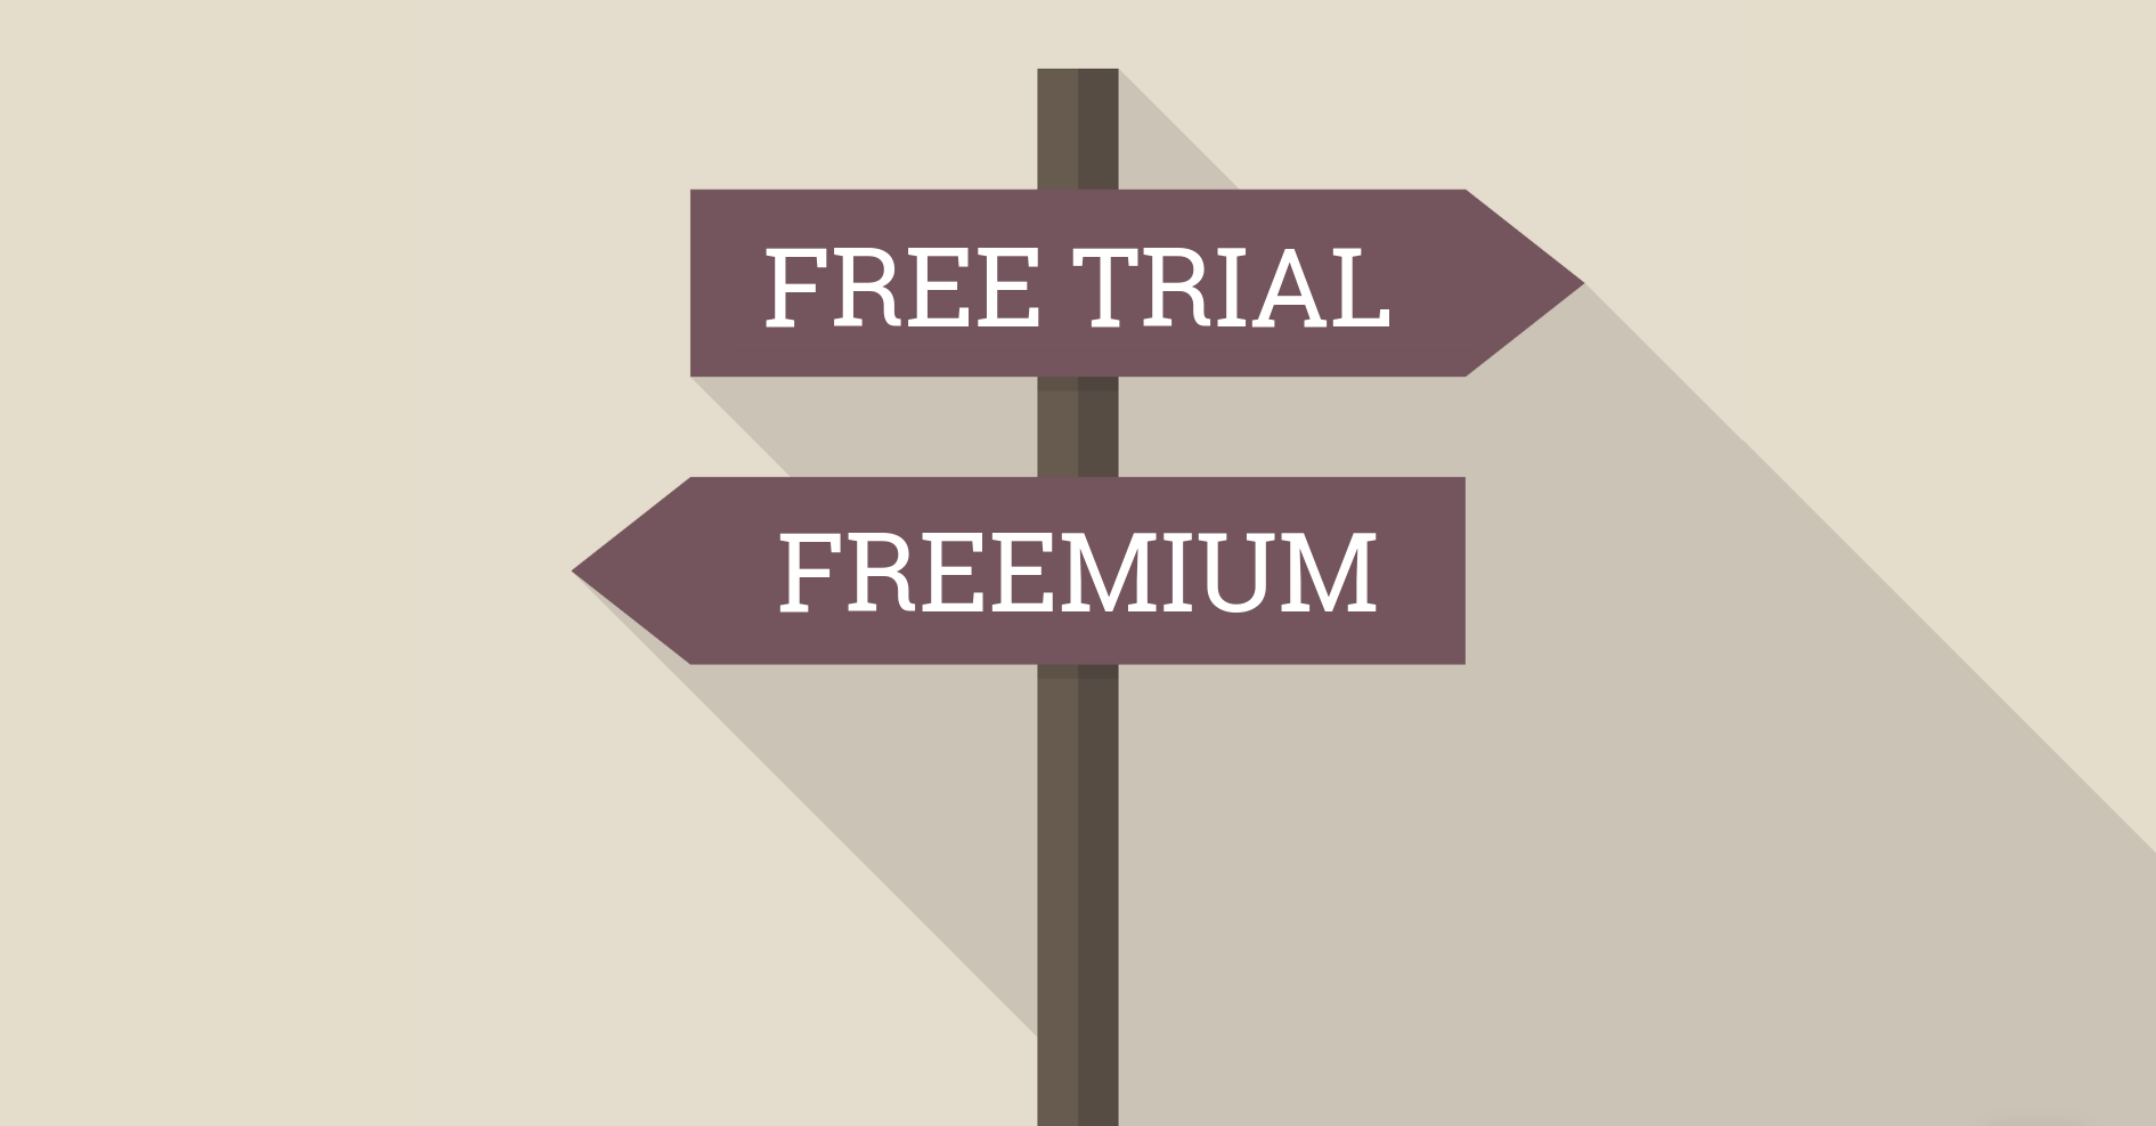 Free trial vs freemium